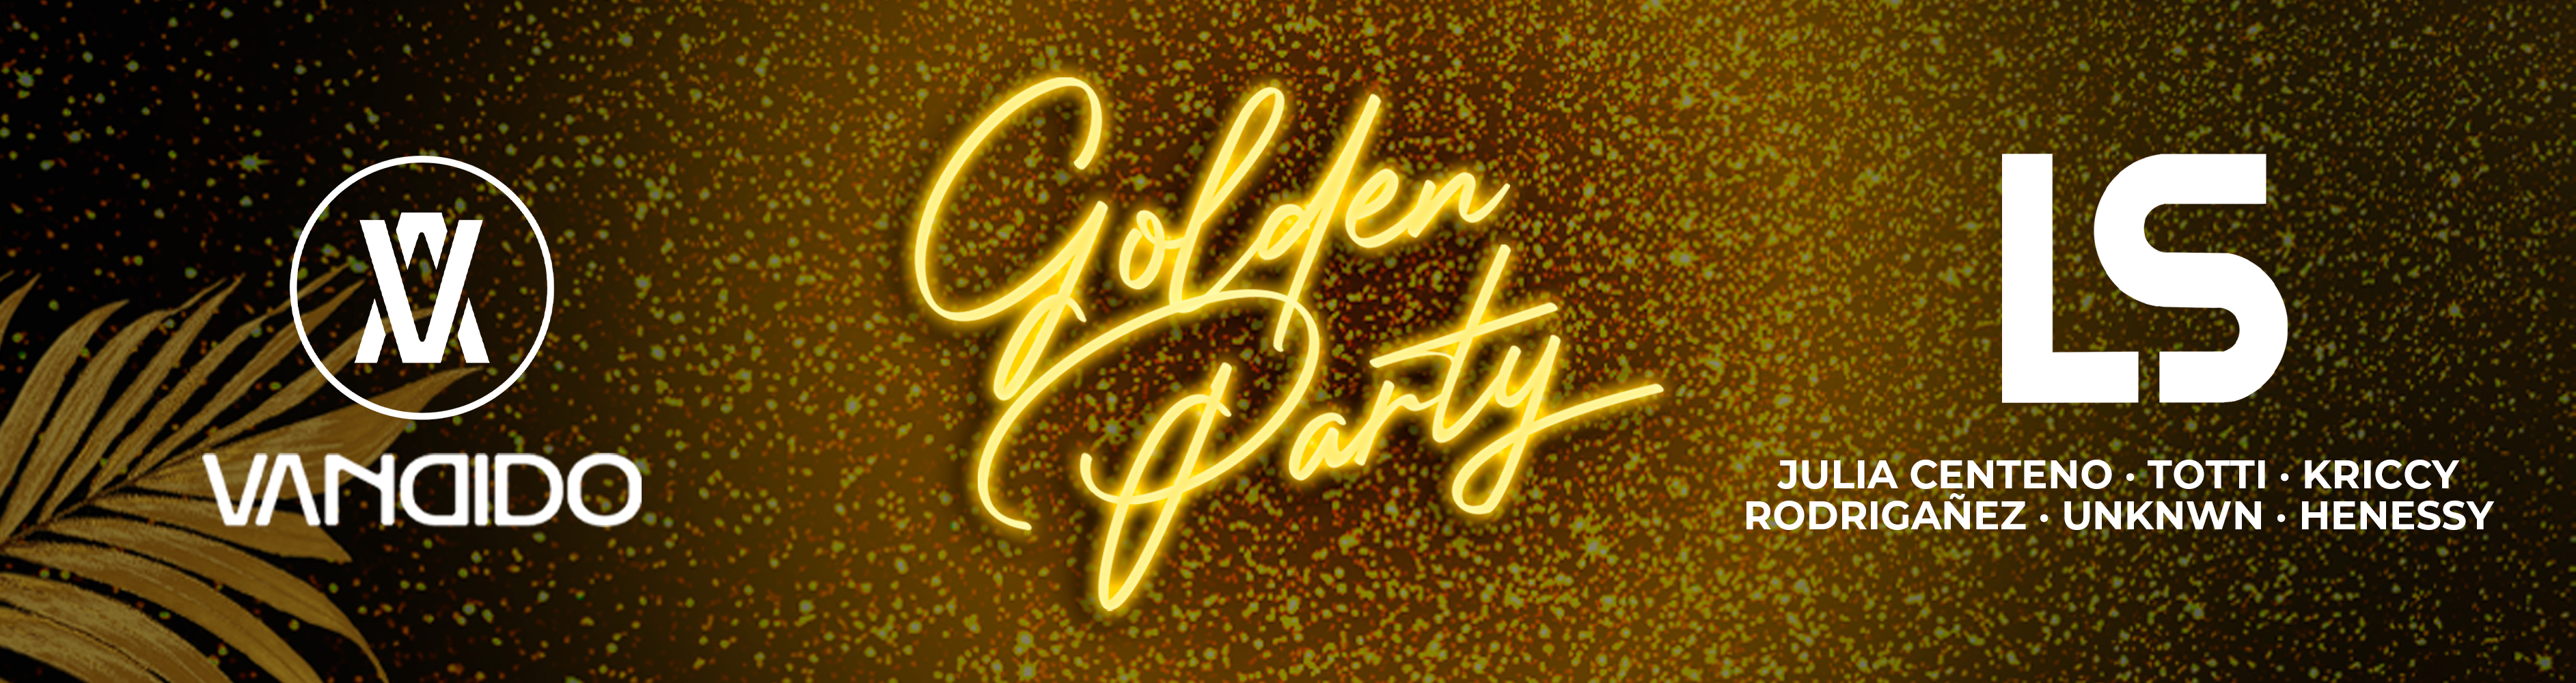 Golden Party en Vandido Club 💛